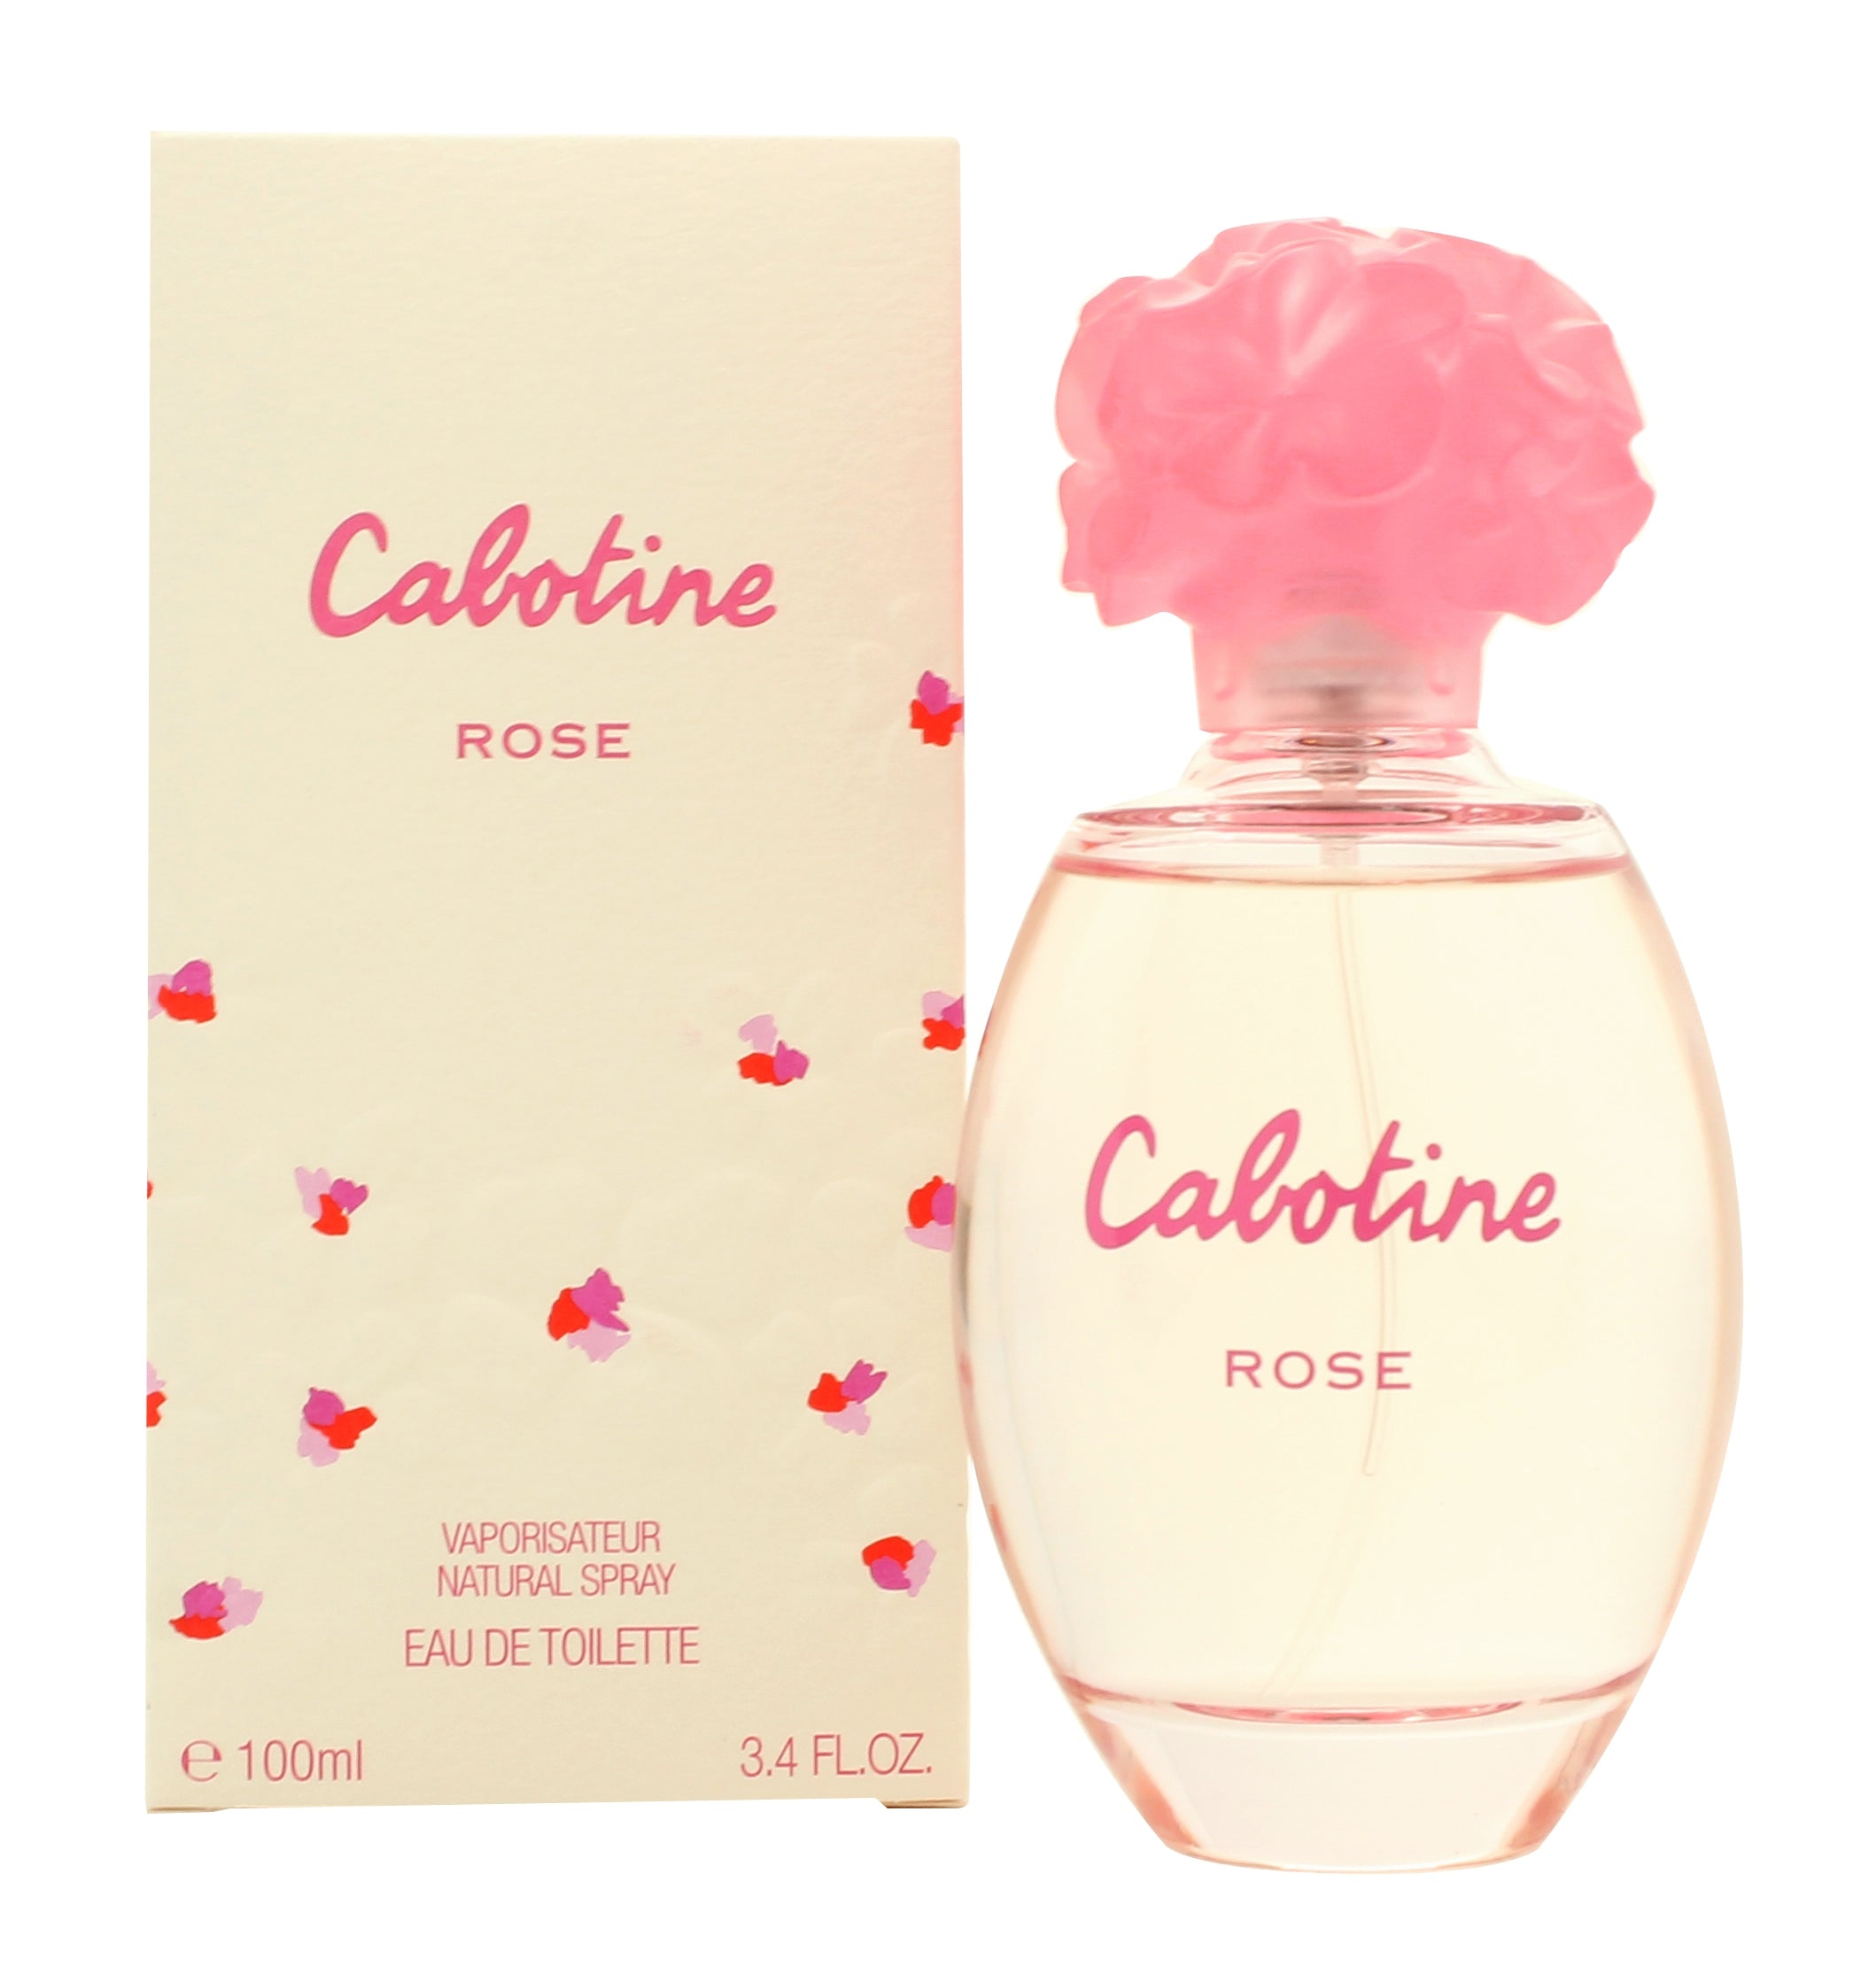 View Gres Parfums Cabotine Rose Eau De Toilette 100ml Spray information